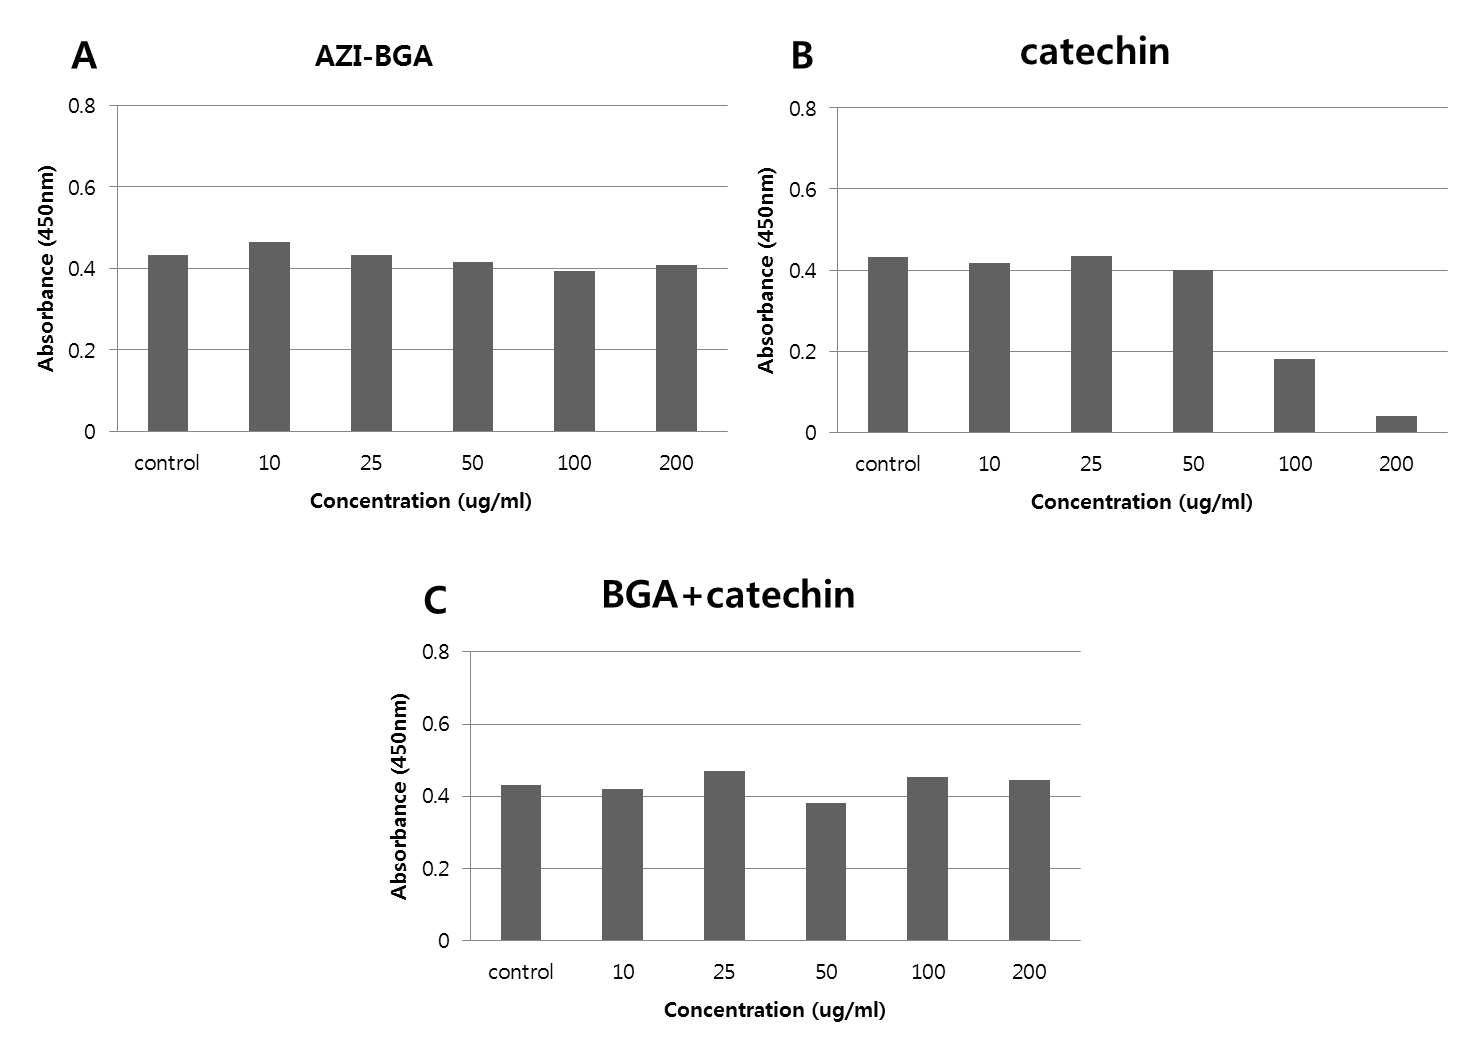 흑마늘 추출물, catechin, 흑마늘+catechin 혼합물의 세포 독성 측정